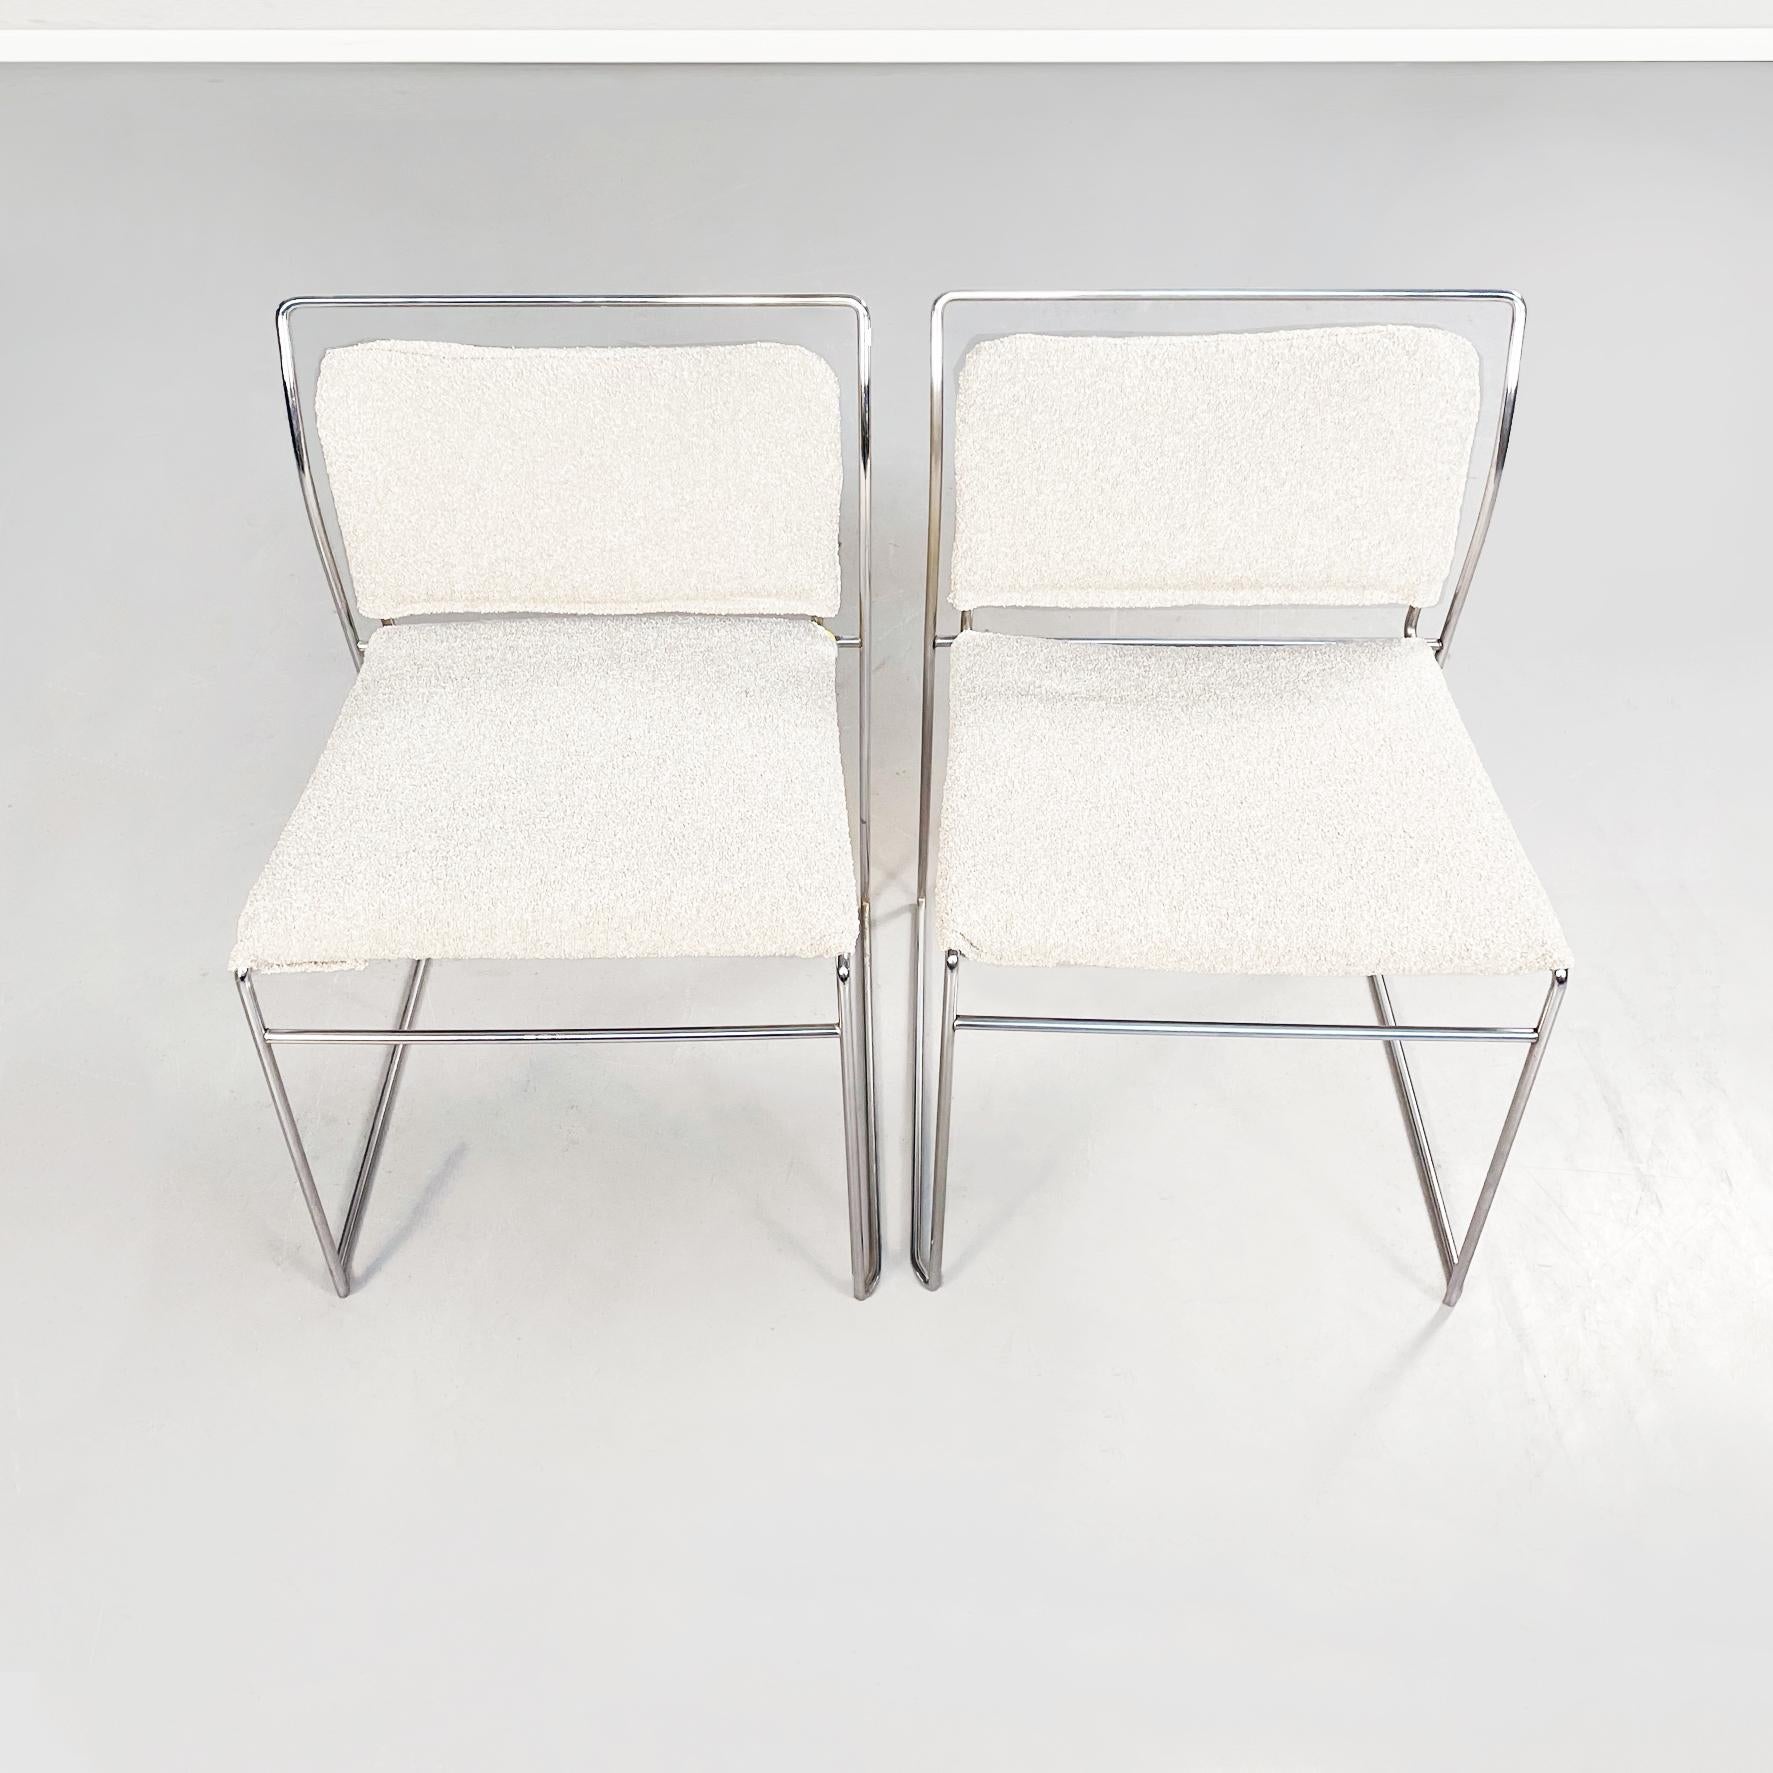 Tulu-Stühle aus Bouclè-Stoff und Stahl, italienische Mitte des Jahrhunderts, von Takahama für Cassina, 1968
Paar Tulu-Stühle mit rechteckigem Sitz, gepolstert und mit Bouclè-Stoff bezogen. Die rohrförmige Struktur aus rostfreiem Stahl ist sichtbar.